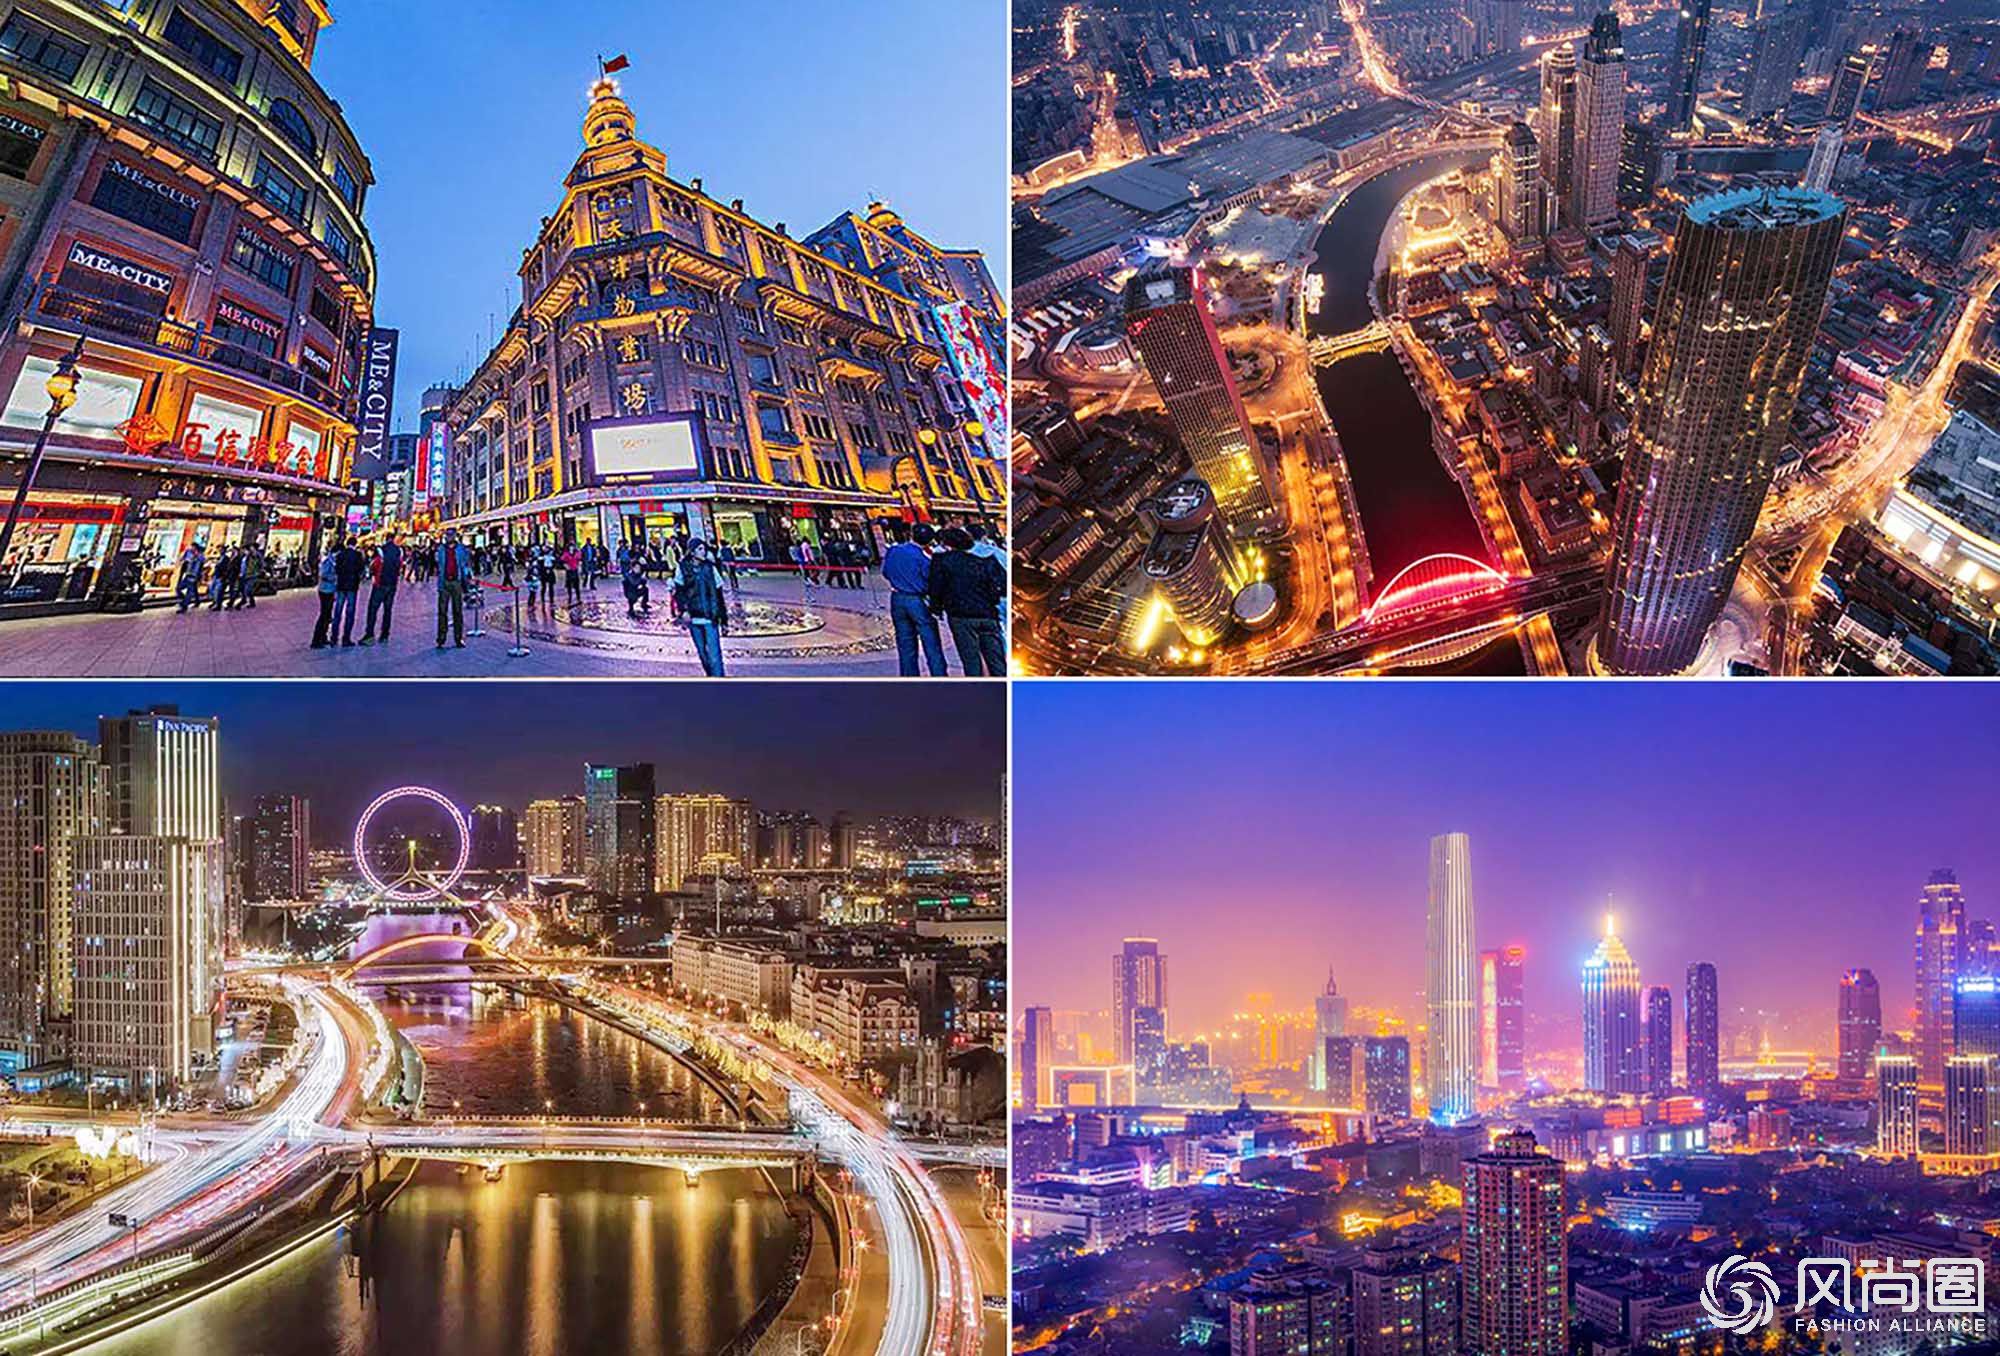 天津是一座繁华绚烂的城市